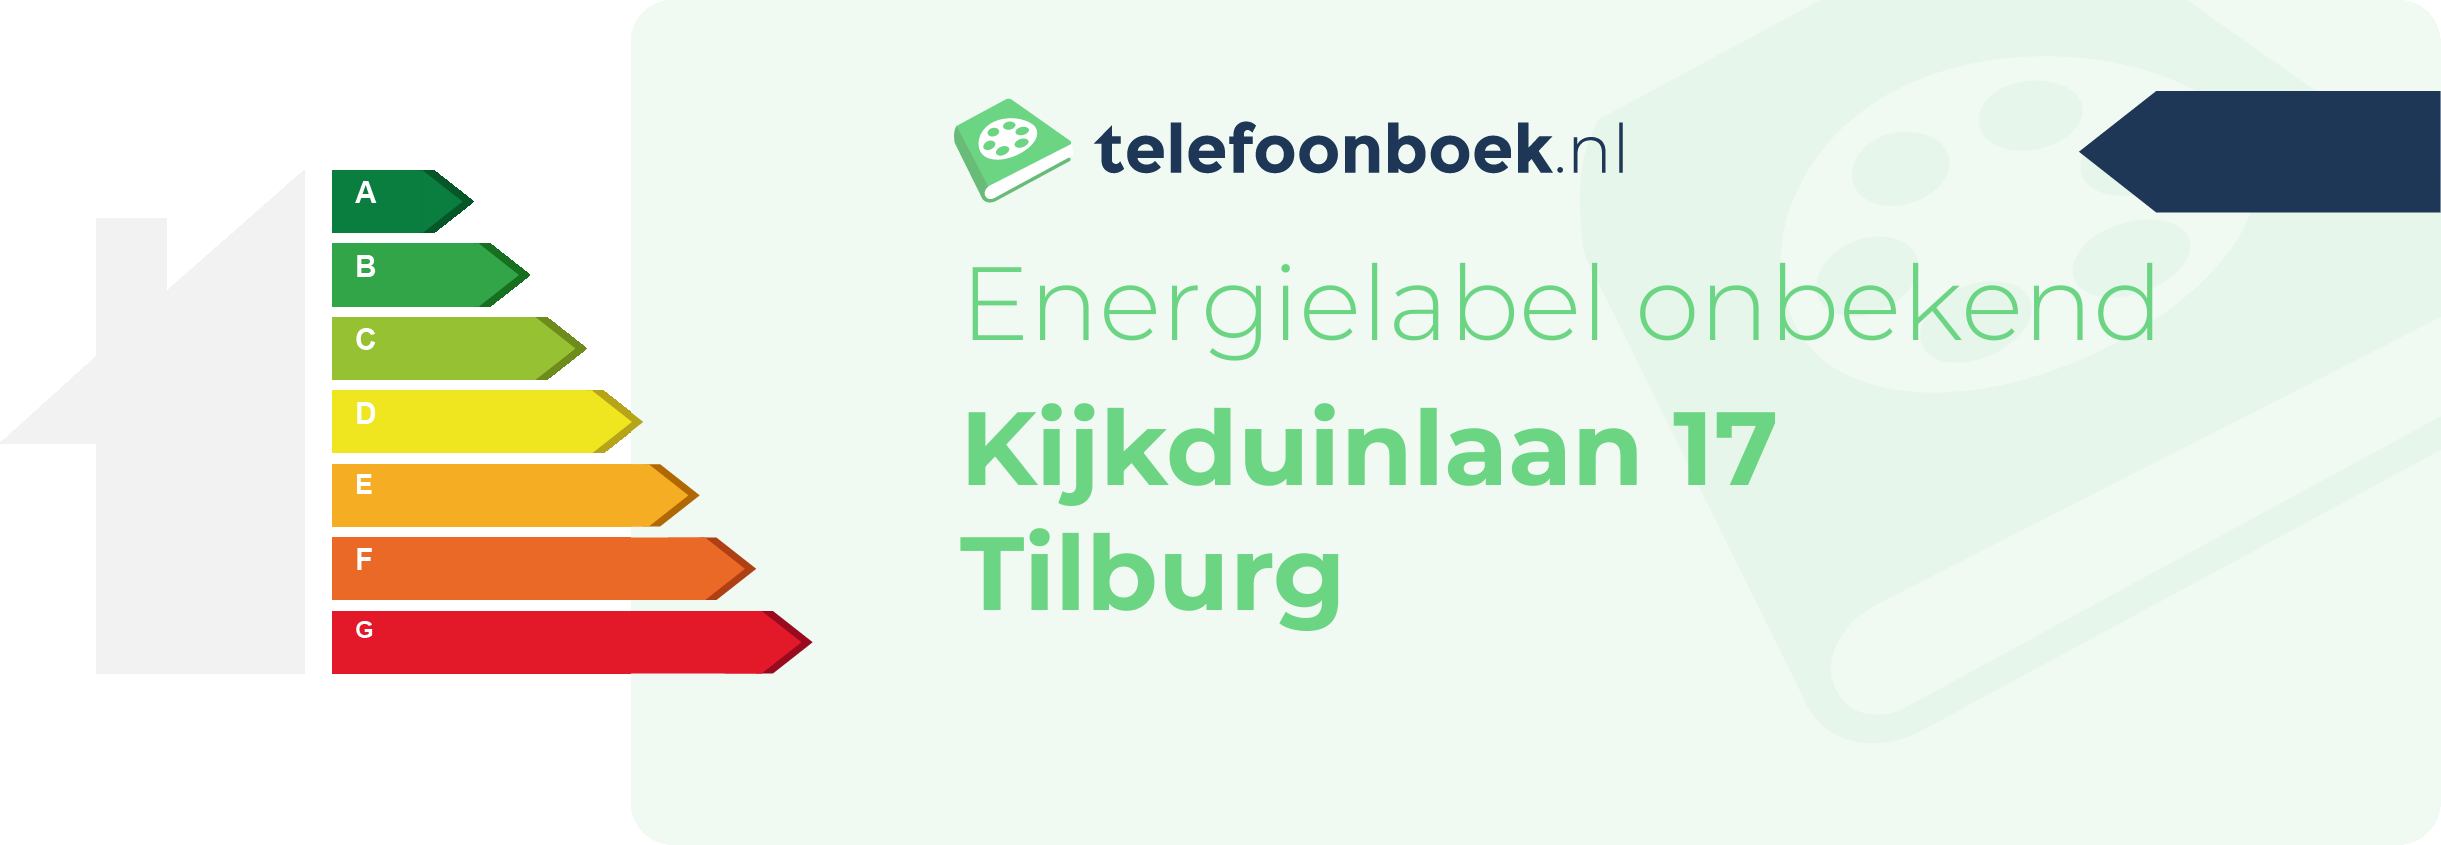 Energielabel Kijkduinlaan 17 Tilburg